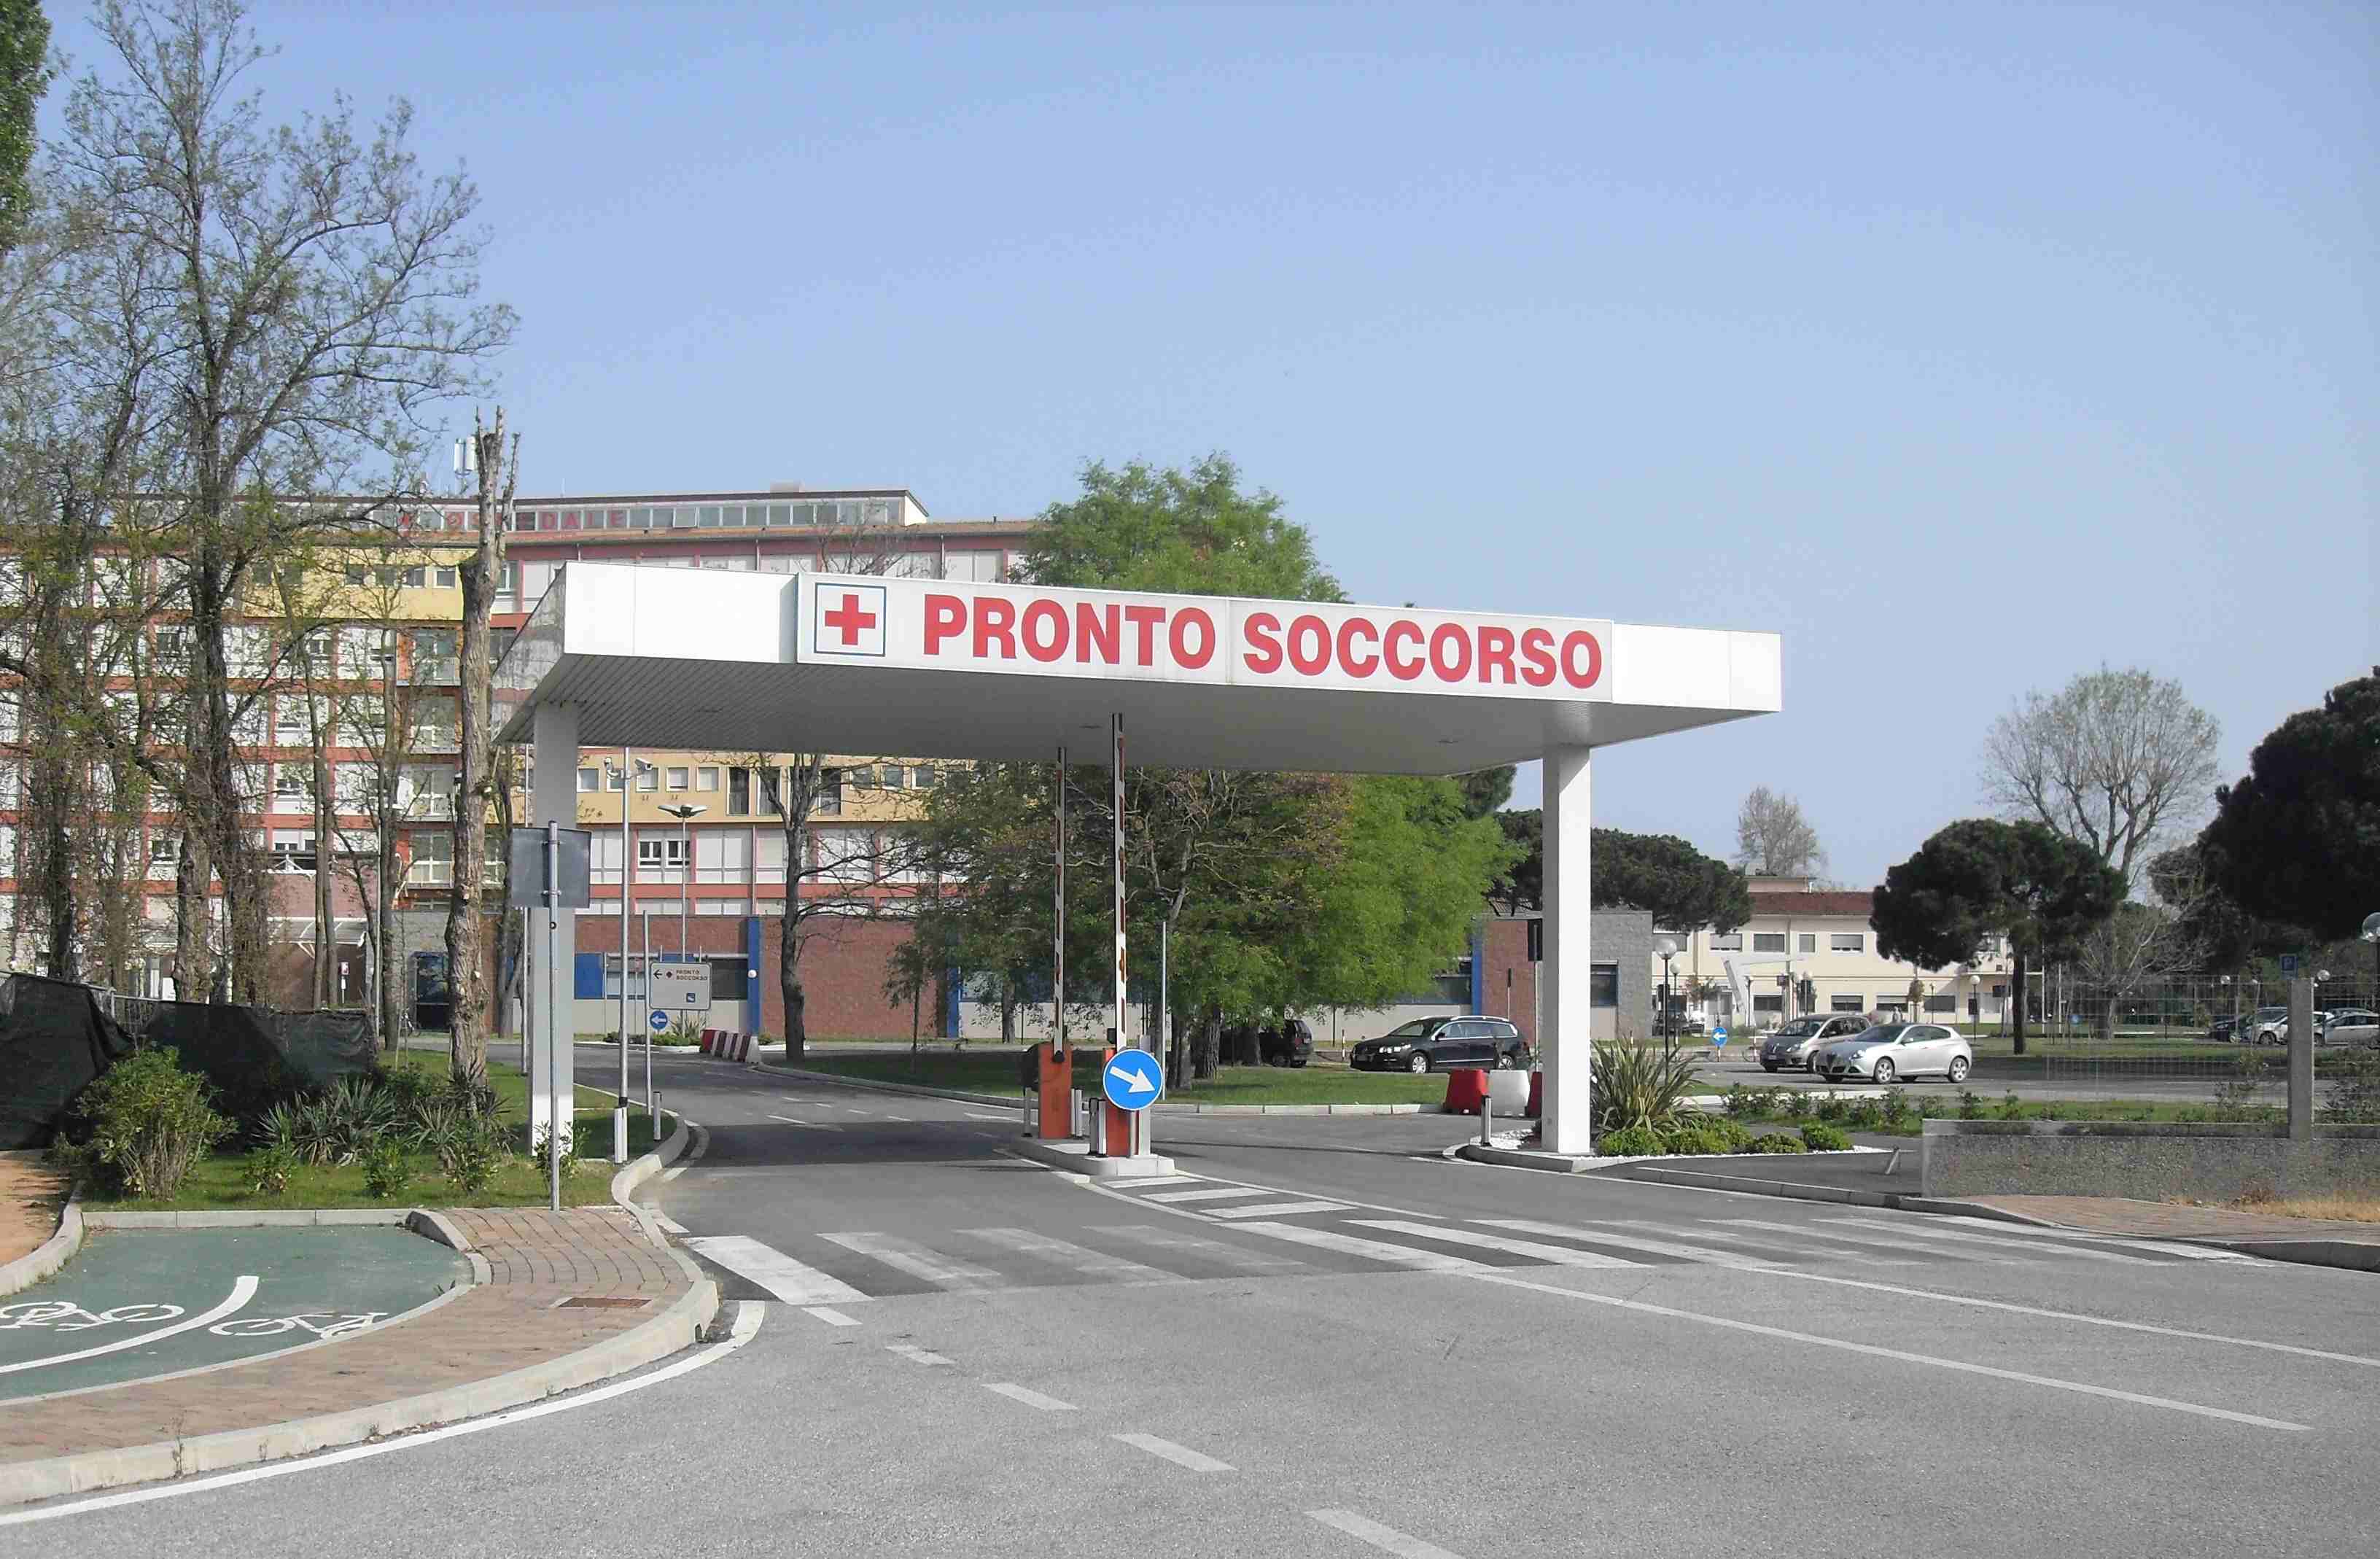 Ospedali: Calano i tempi delle liste d’attesa in Veneto